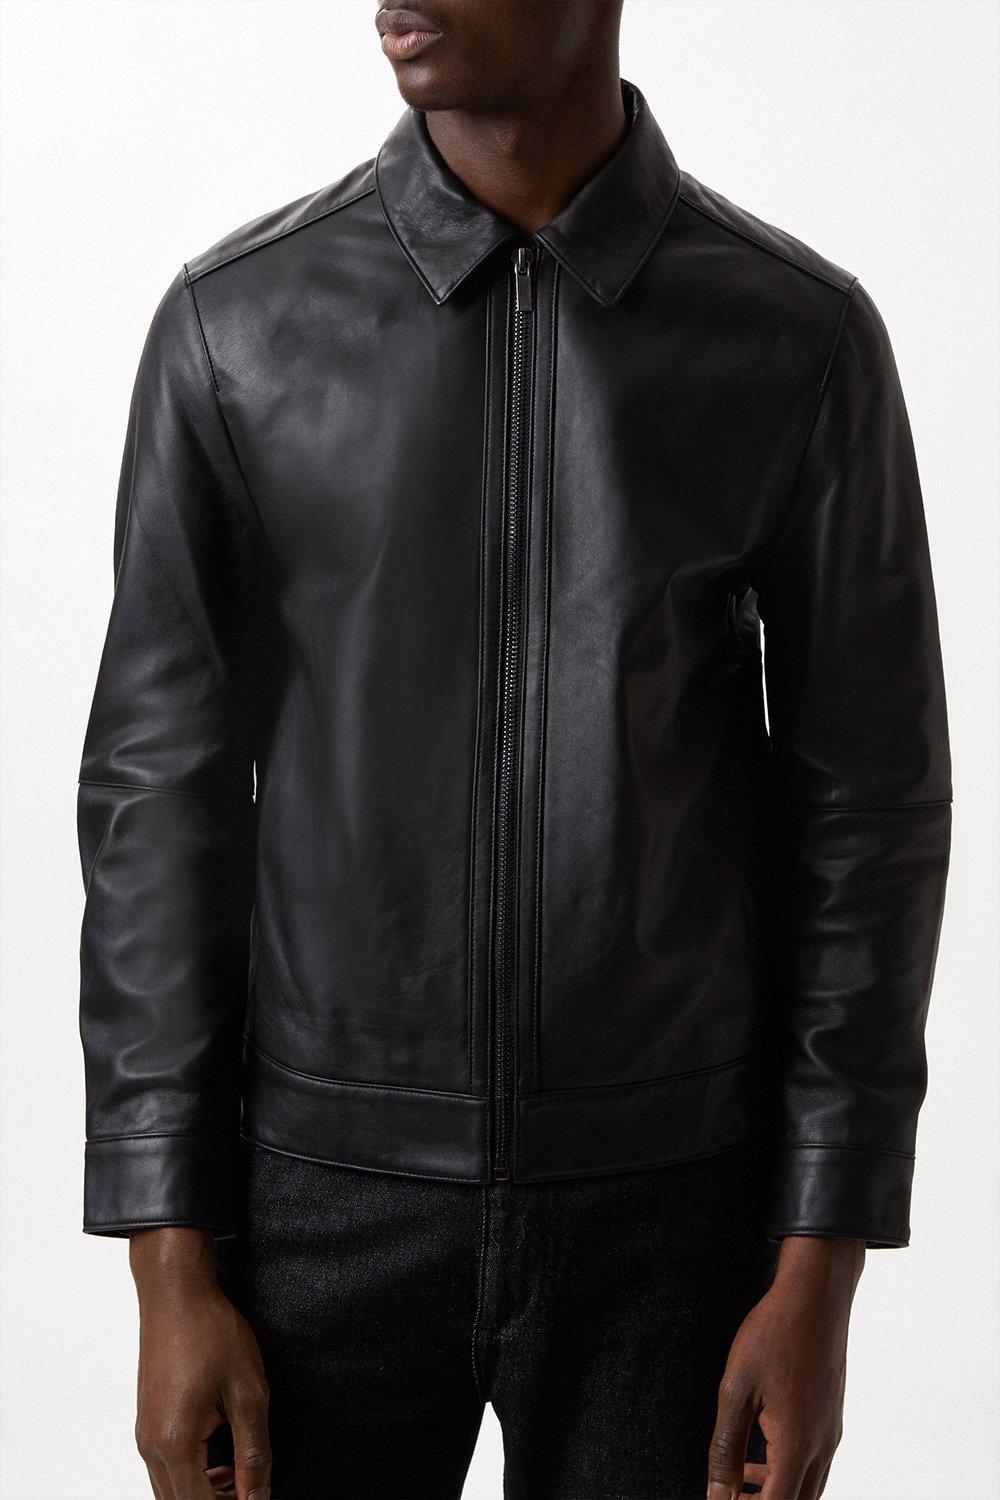 Jackets & Coats | Collared Leather Jacket | Burton